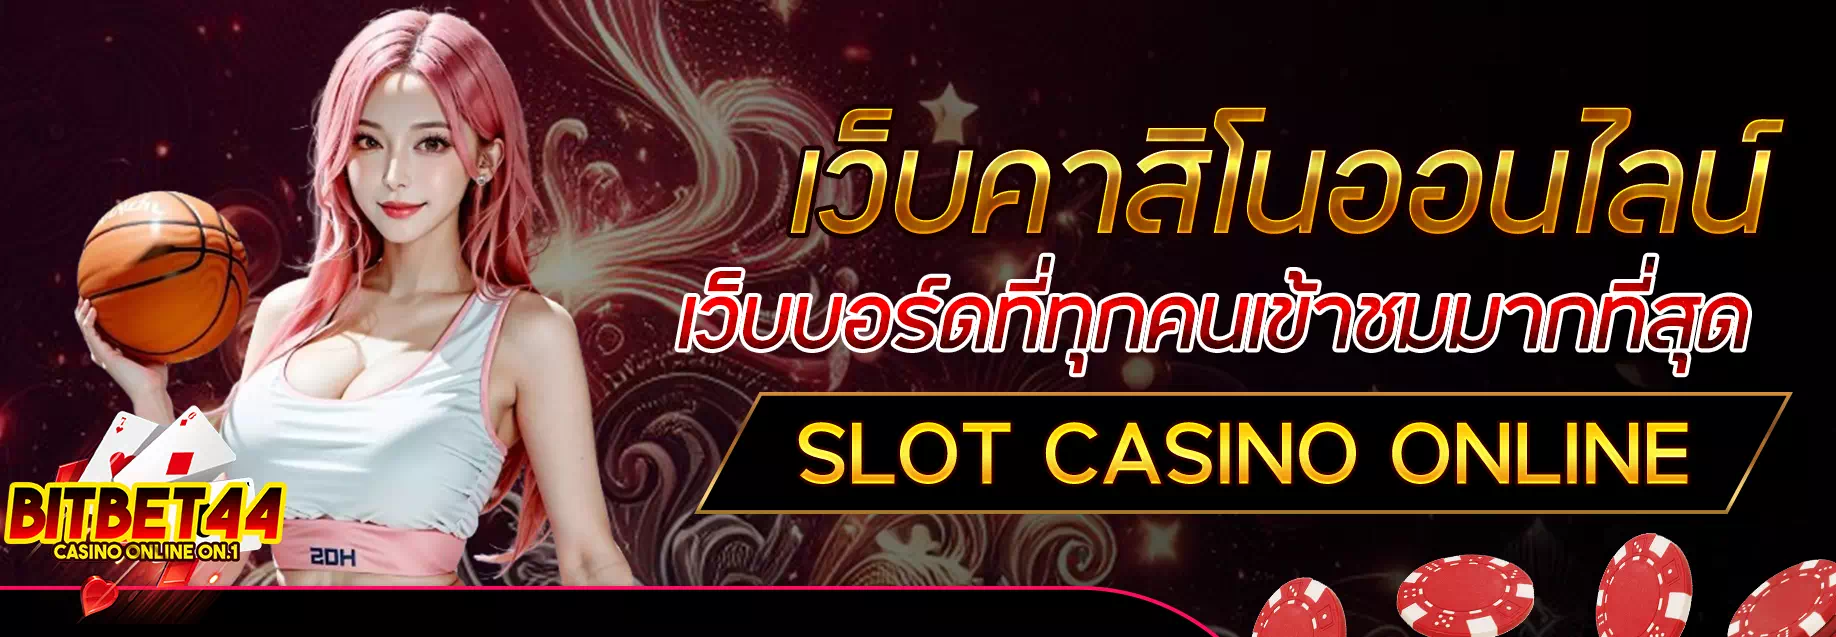 bitbet44 casino